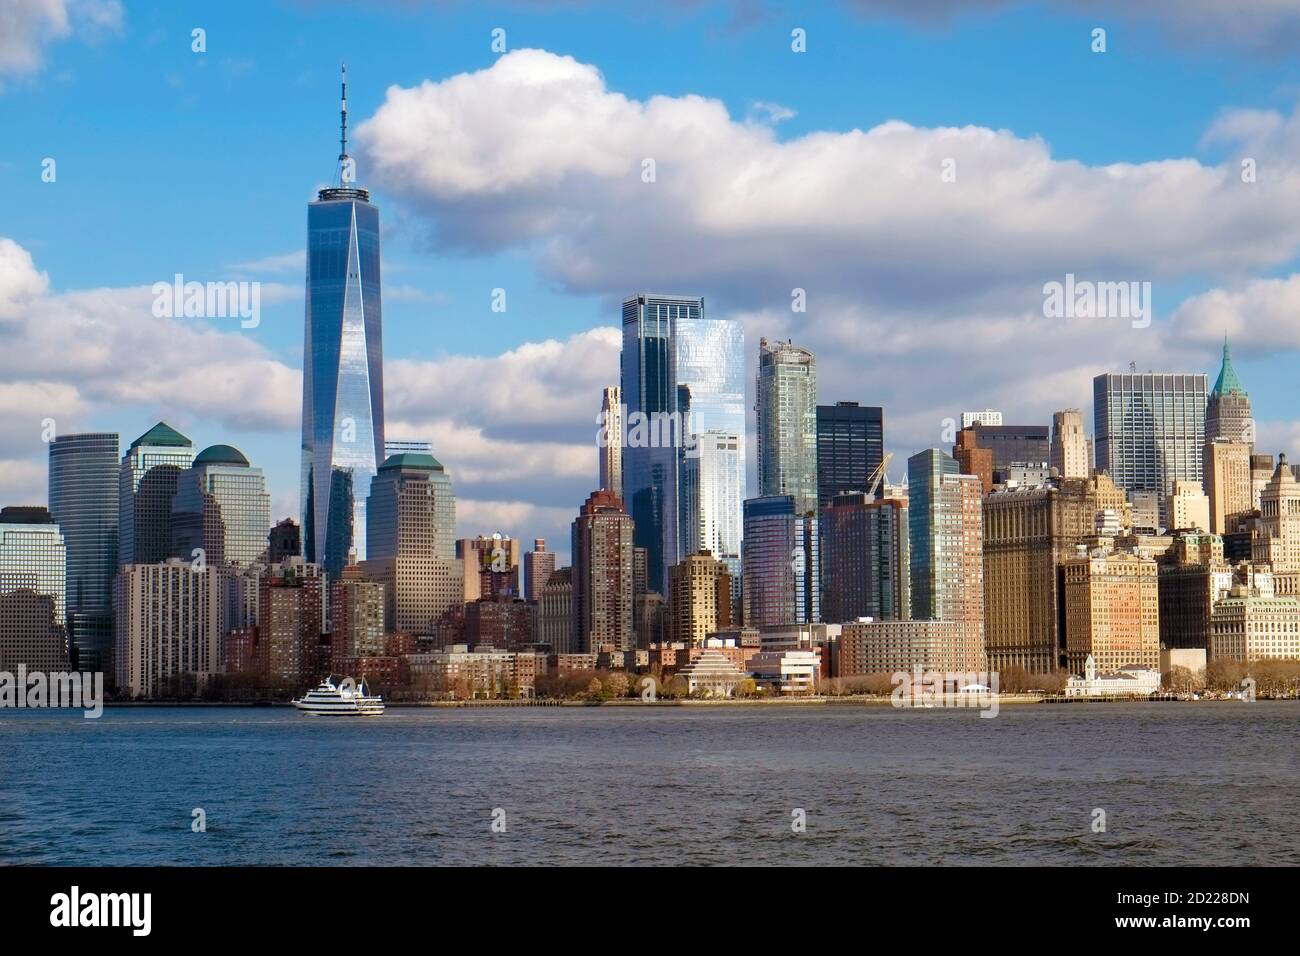 New York Manhatten Skyline from Hudson River Stock Photo